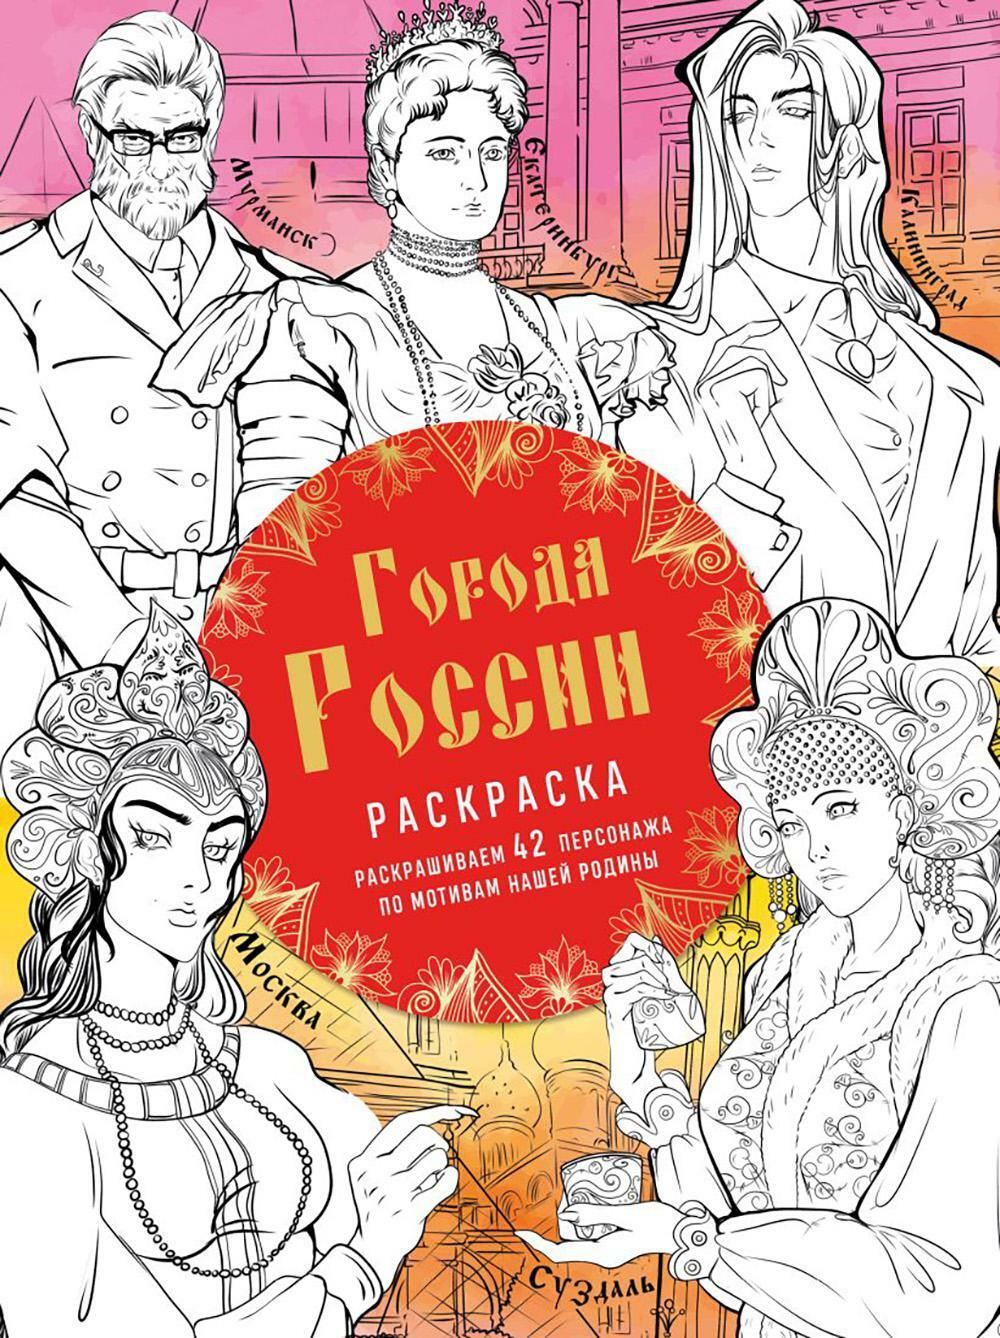 Города России: раскрашиваем 42 персонажа по мотивам нашей родины